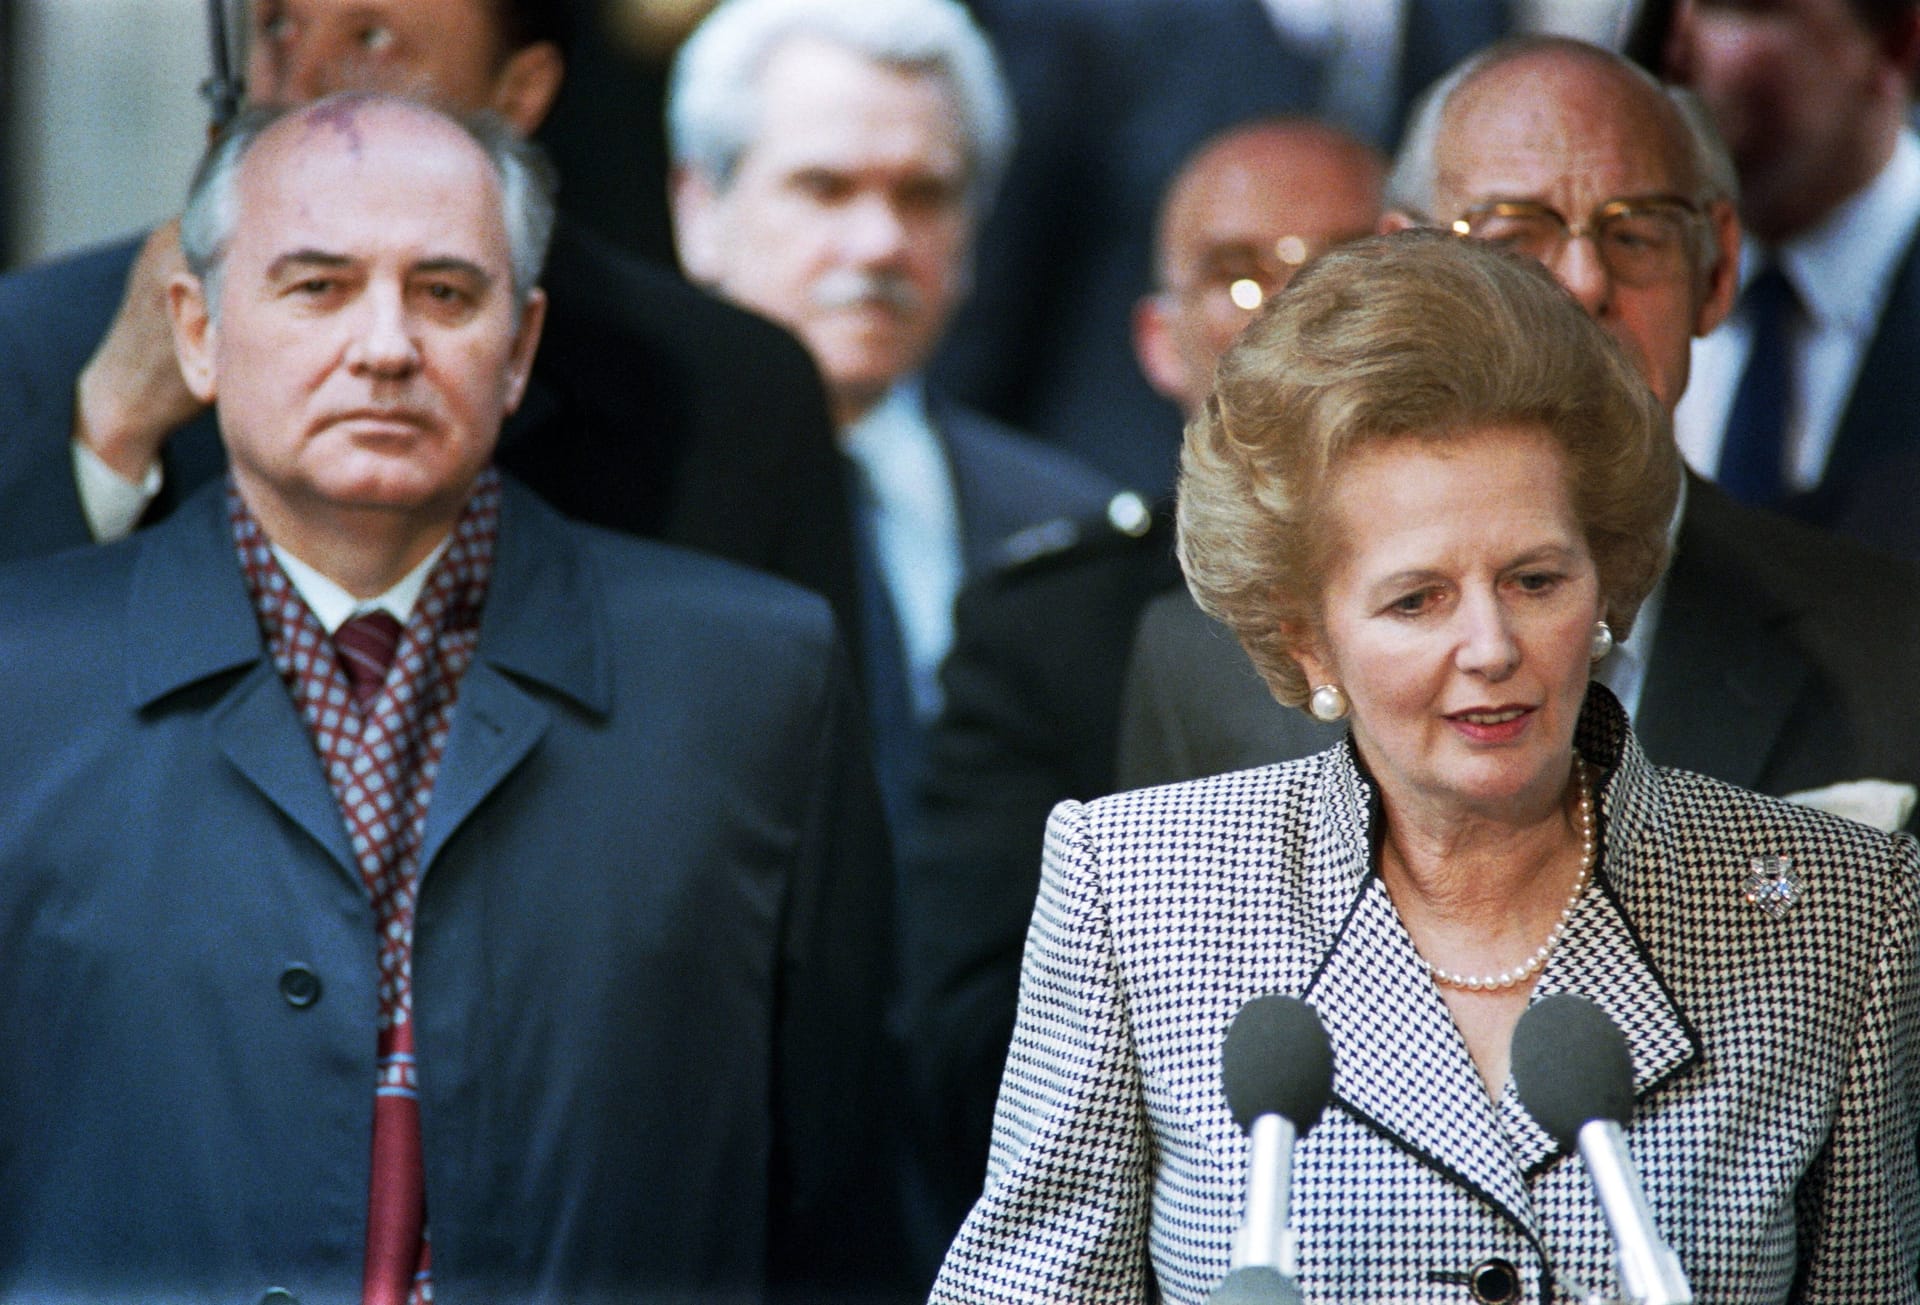 Im Laufe der Jahre steigt Gorbatschow in der Hierarchie der Kommunistischen Partei immer weiter auf. Am 11. März 1985 ist es dann so weit: Er wird Generalsekretär des Zentralkomitees. Zu westlichen Politikern wie Margaret Thatcher baut er ein vertrauensvolles Verhältnis auf.